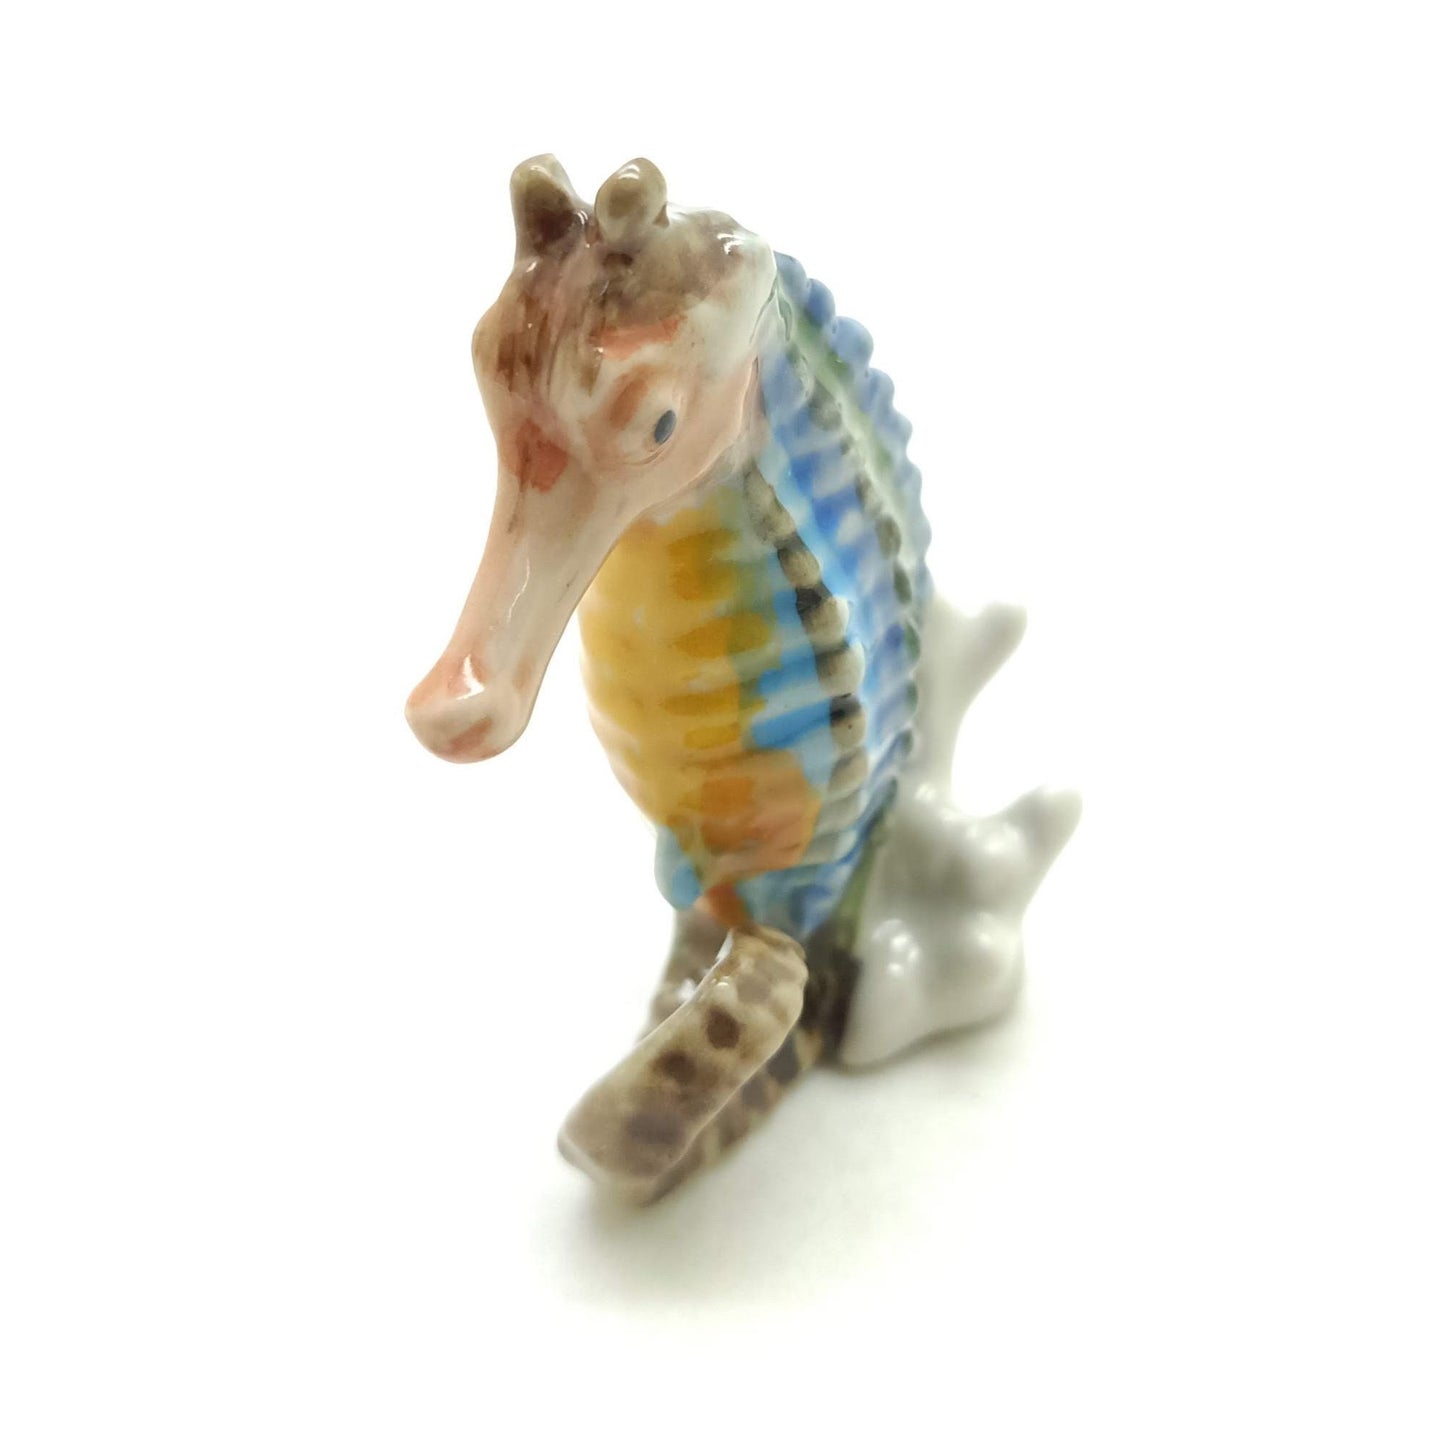 Seahorse Ceramic Figurine